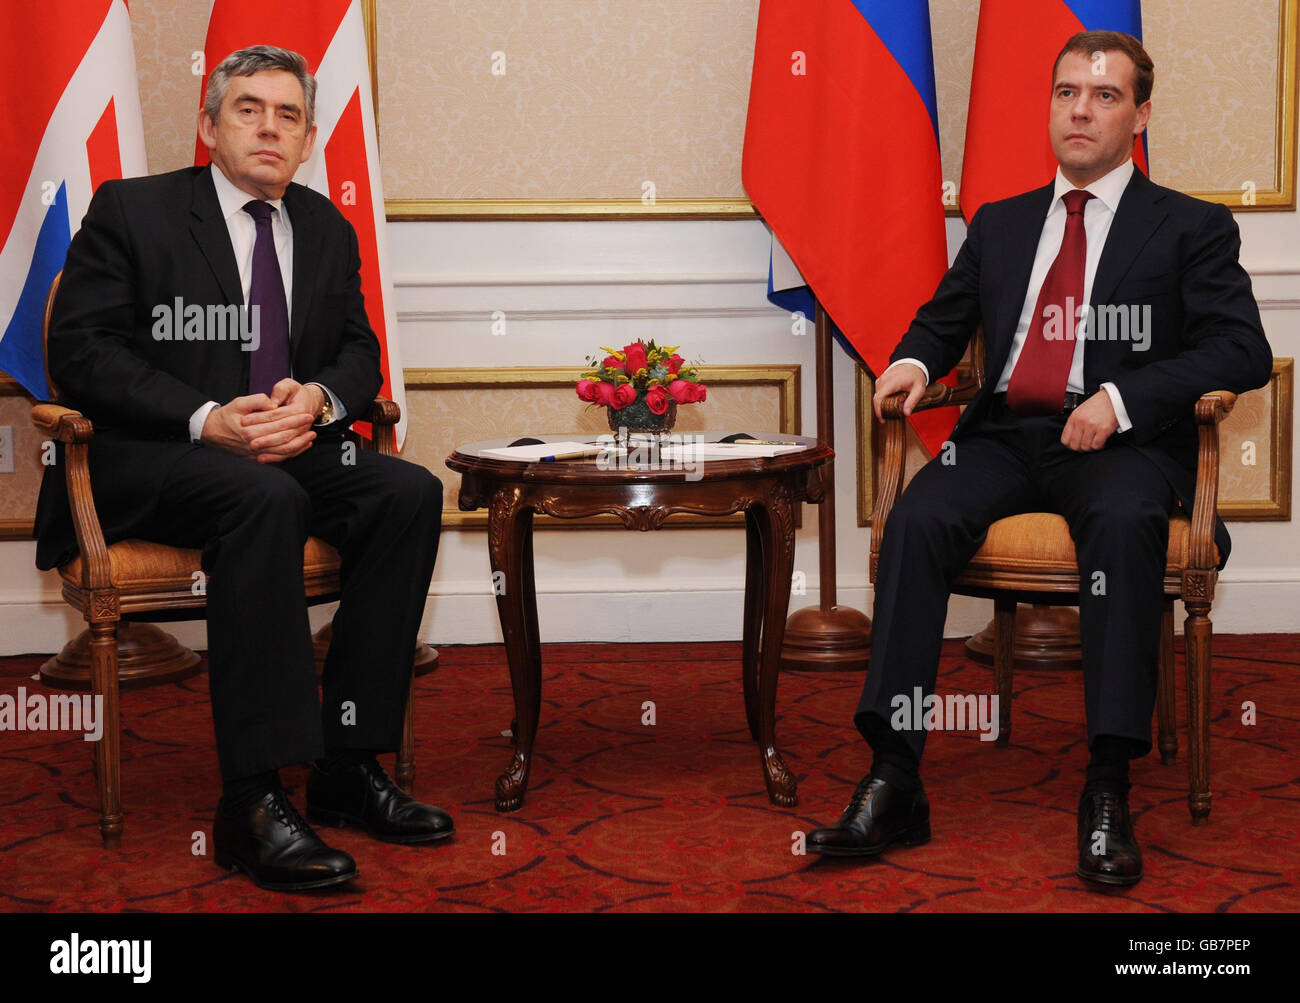 Premierminister Gordon Brown trifft sich mit dem russischen Präsidenten Dmitri Medwedew in Washington, nachdem er am Gipfel über Finanzmärkte und Weltwirtschaft teilgenommen hat. Stockfoto